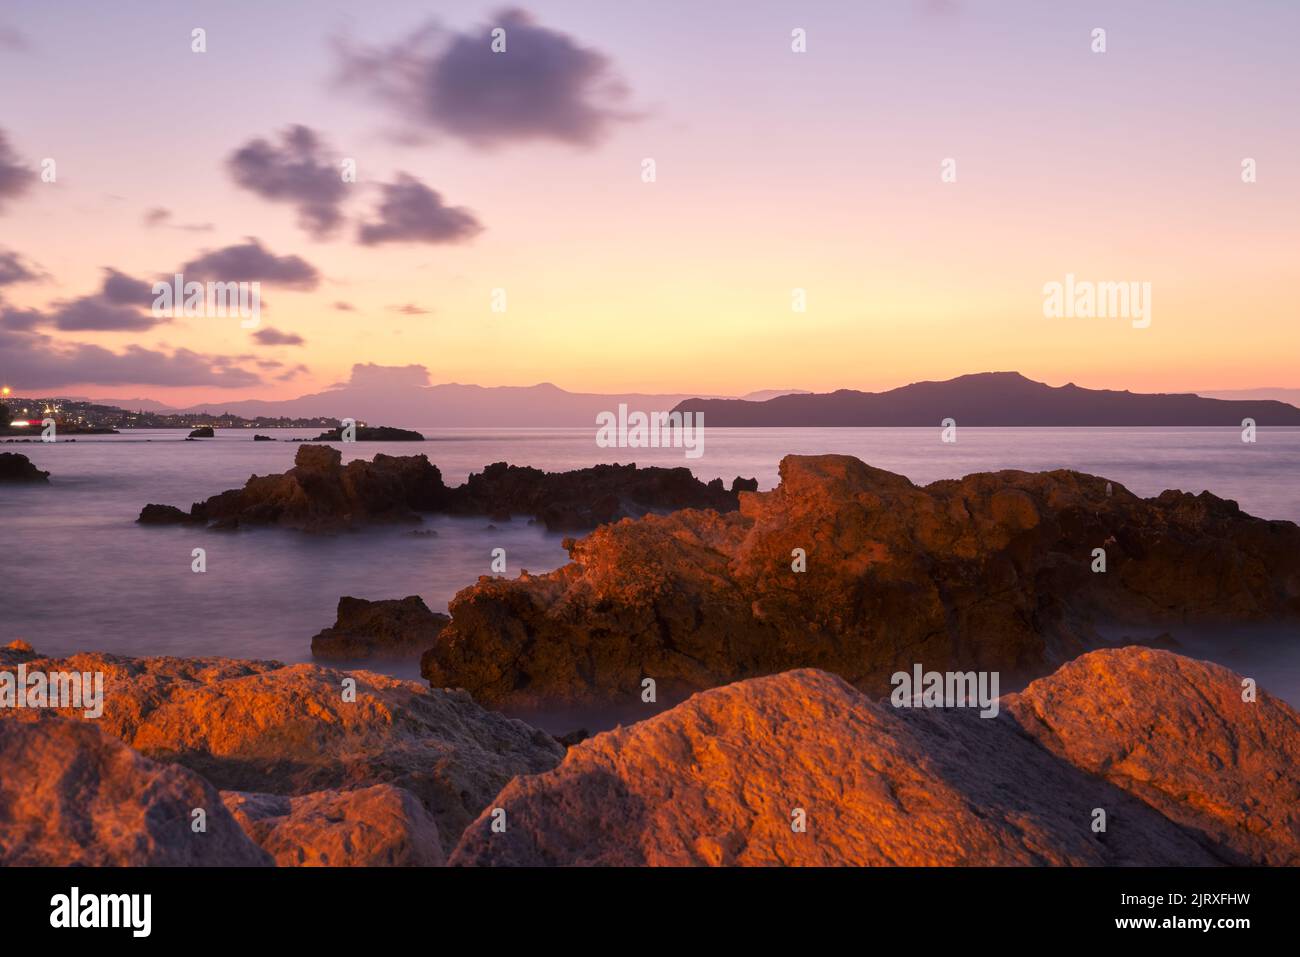 Wunderschönes Meer und Wellen bei Sonnenuntergang in Chania Kreta - Griechenland - Langzeitbelichtung Foto Stockfoto